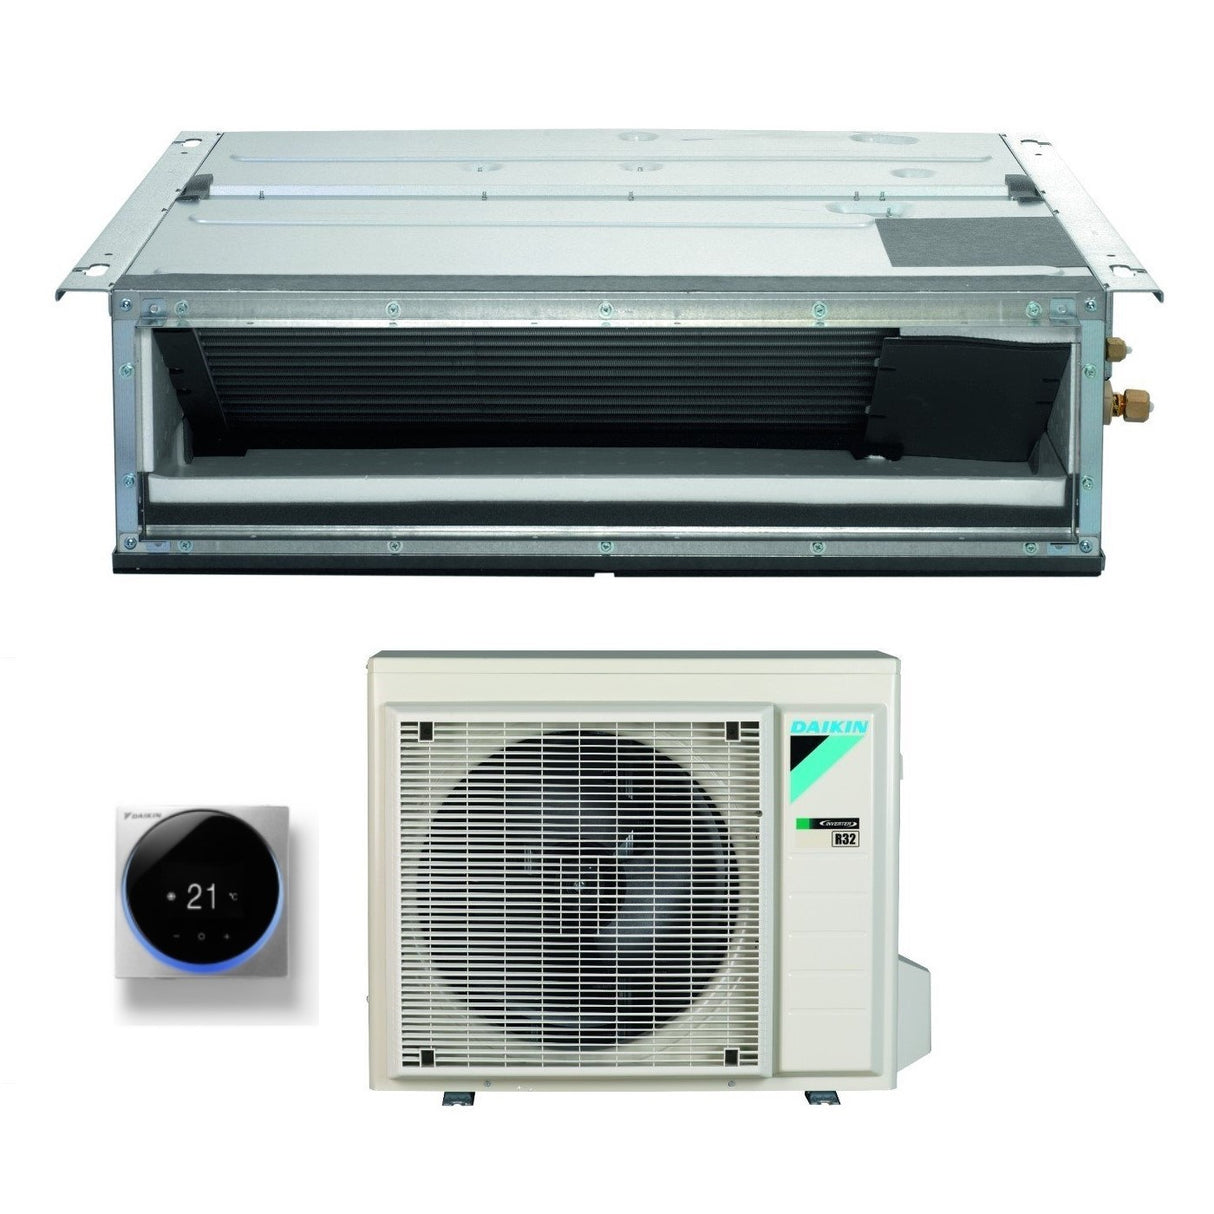 immagine-3-daikin-climatizzatore-condizionatore-daikin-bluevolution-inverter-canalizzato-ultrapiatto-18000-btu-fdxm50f3f9-r-32-wi-fi-optional-garanzia-italiana